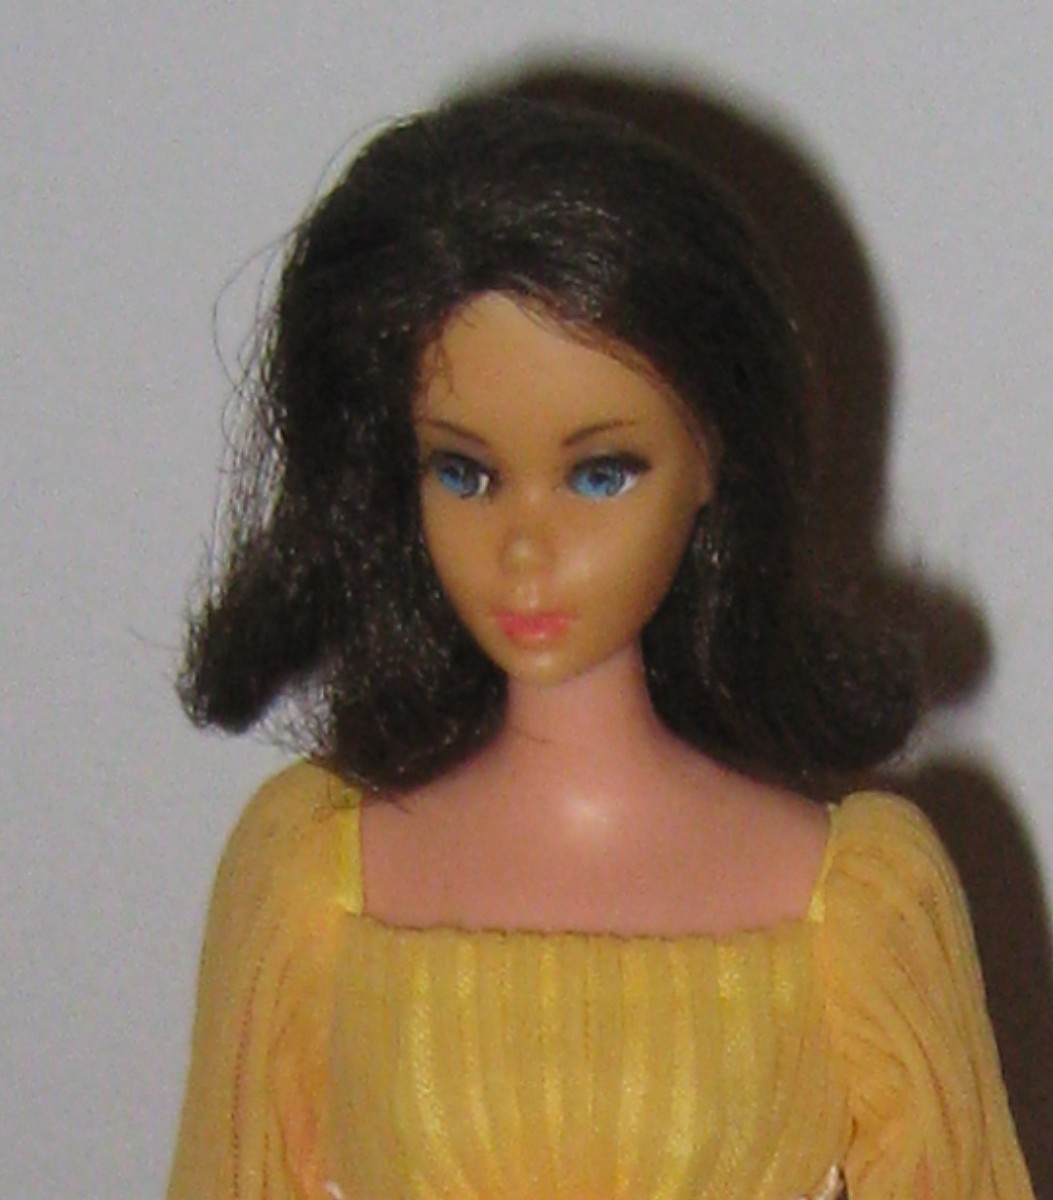 Barbie Doll's Closet; 1970 - a New Decade!